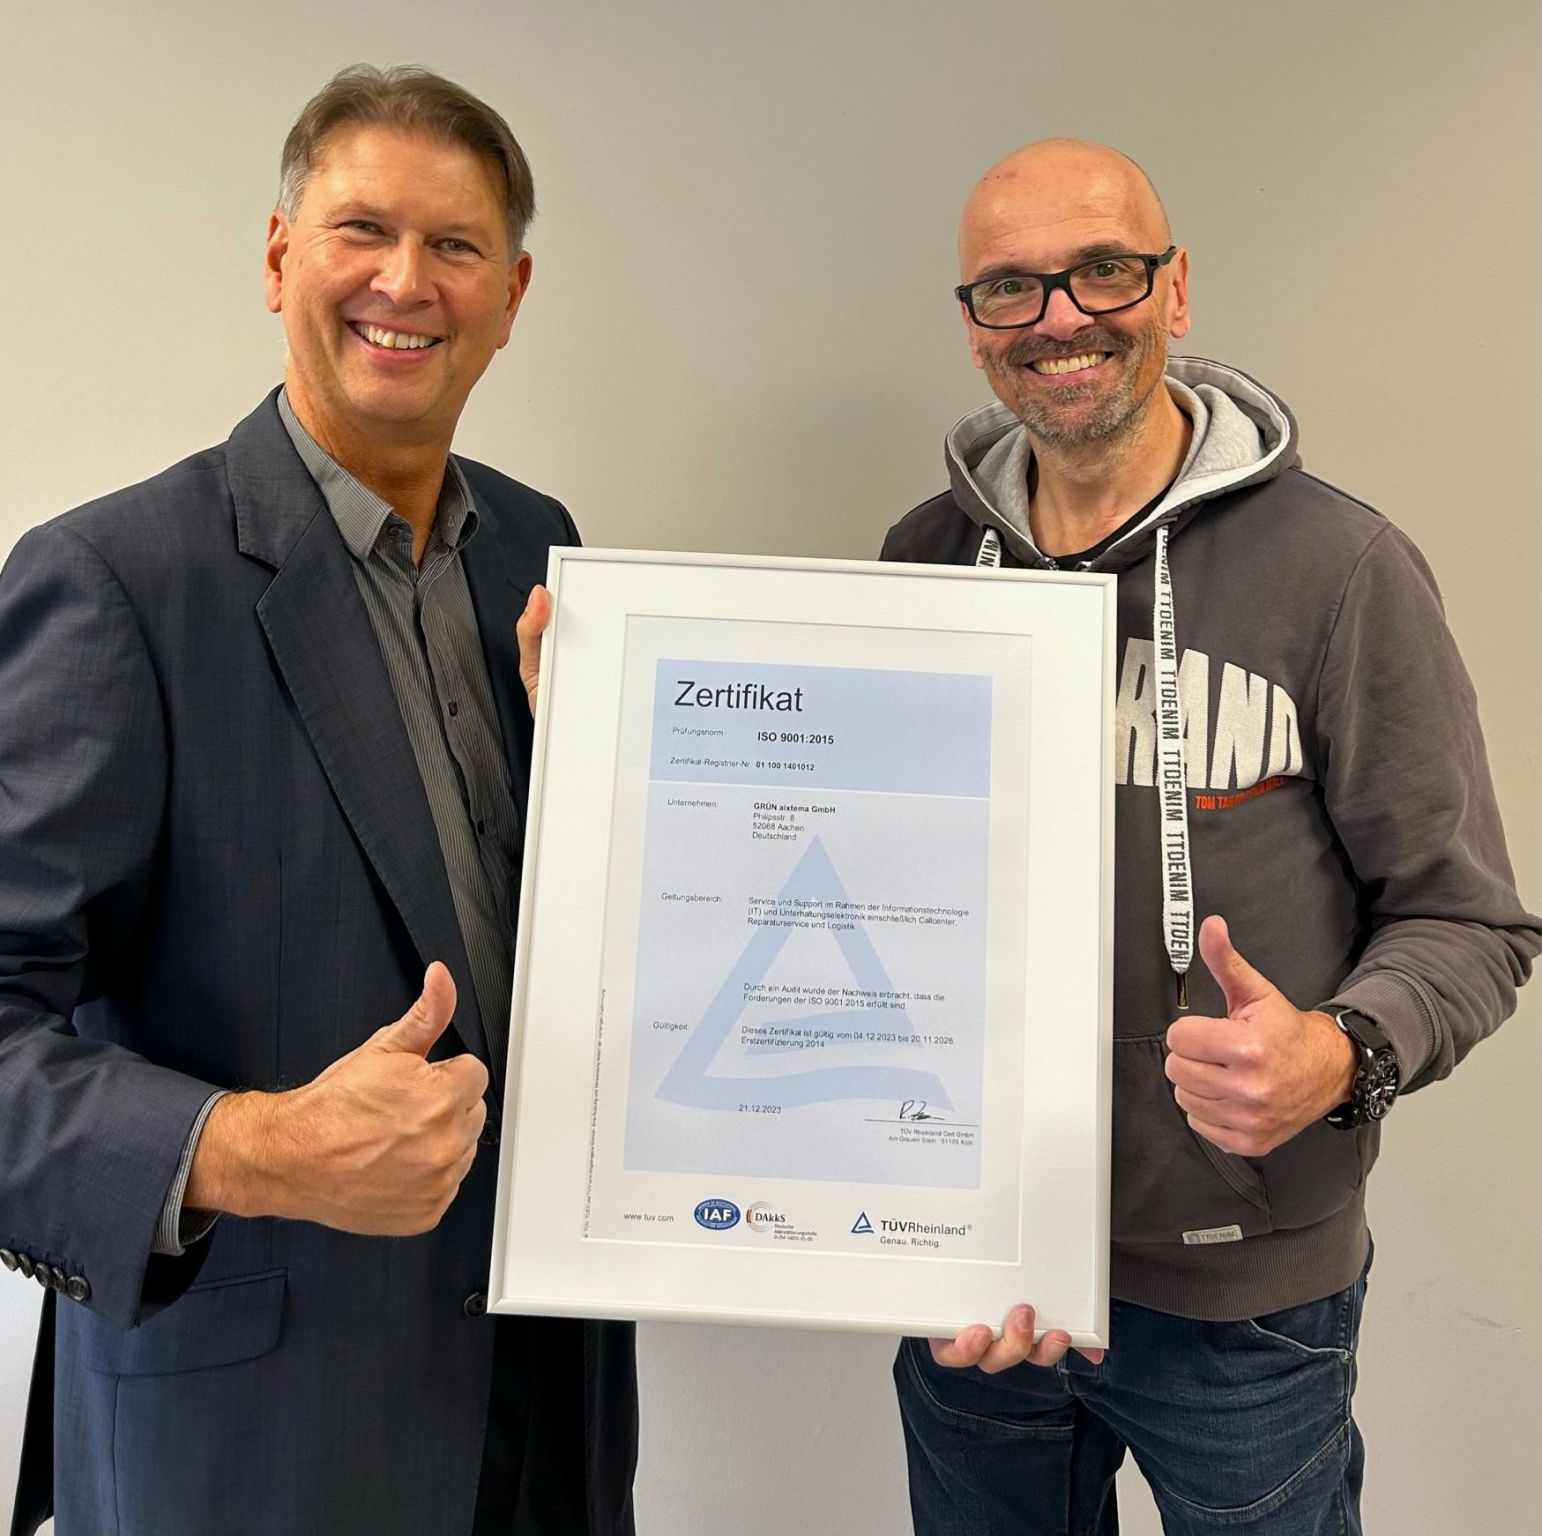 Der TÜV Rheinland, vertreten durch Ralph Freude (links), überreicht Oliver Roßbruch, CEO der GRÜN aixtema GmbH, das DIN ISO 9001:2015 Zertifikat.